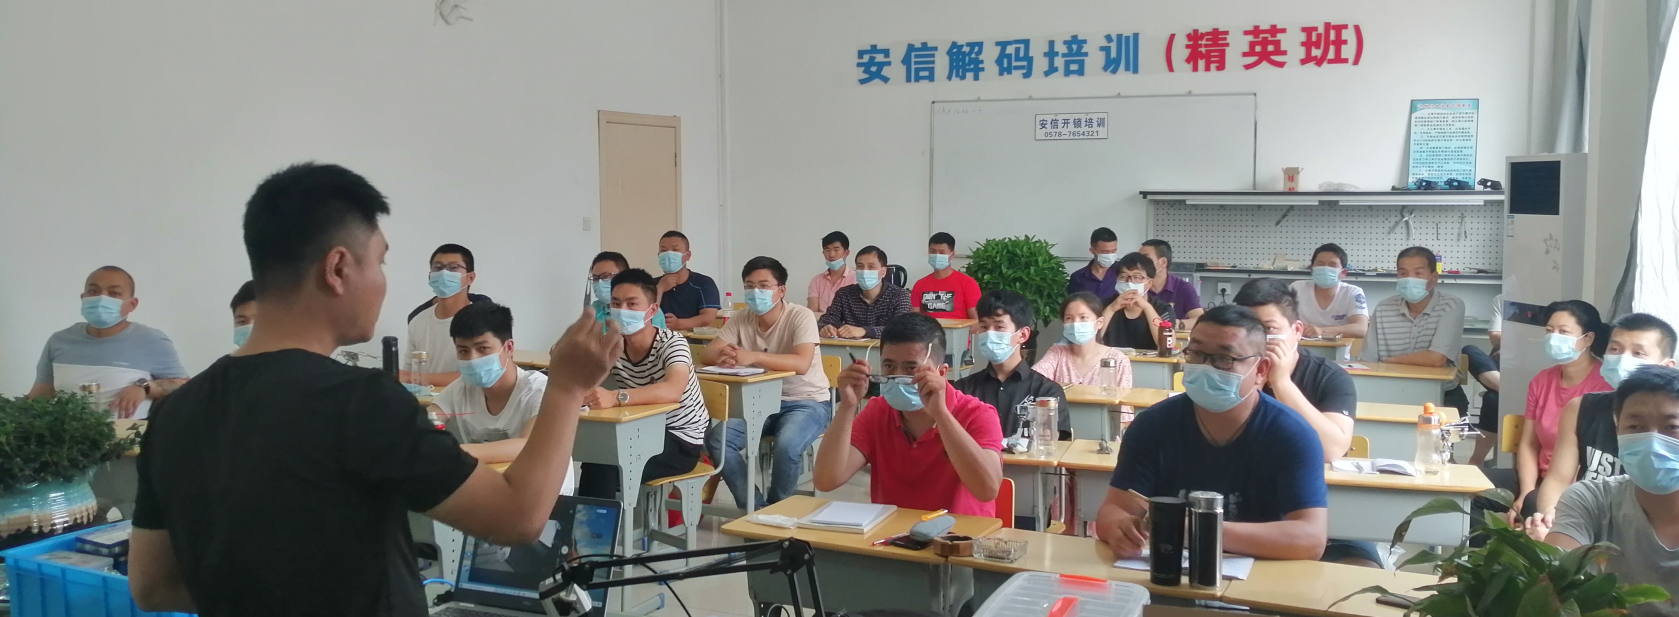 上海开锁技术培训学校